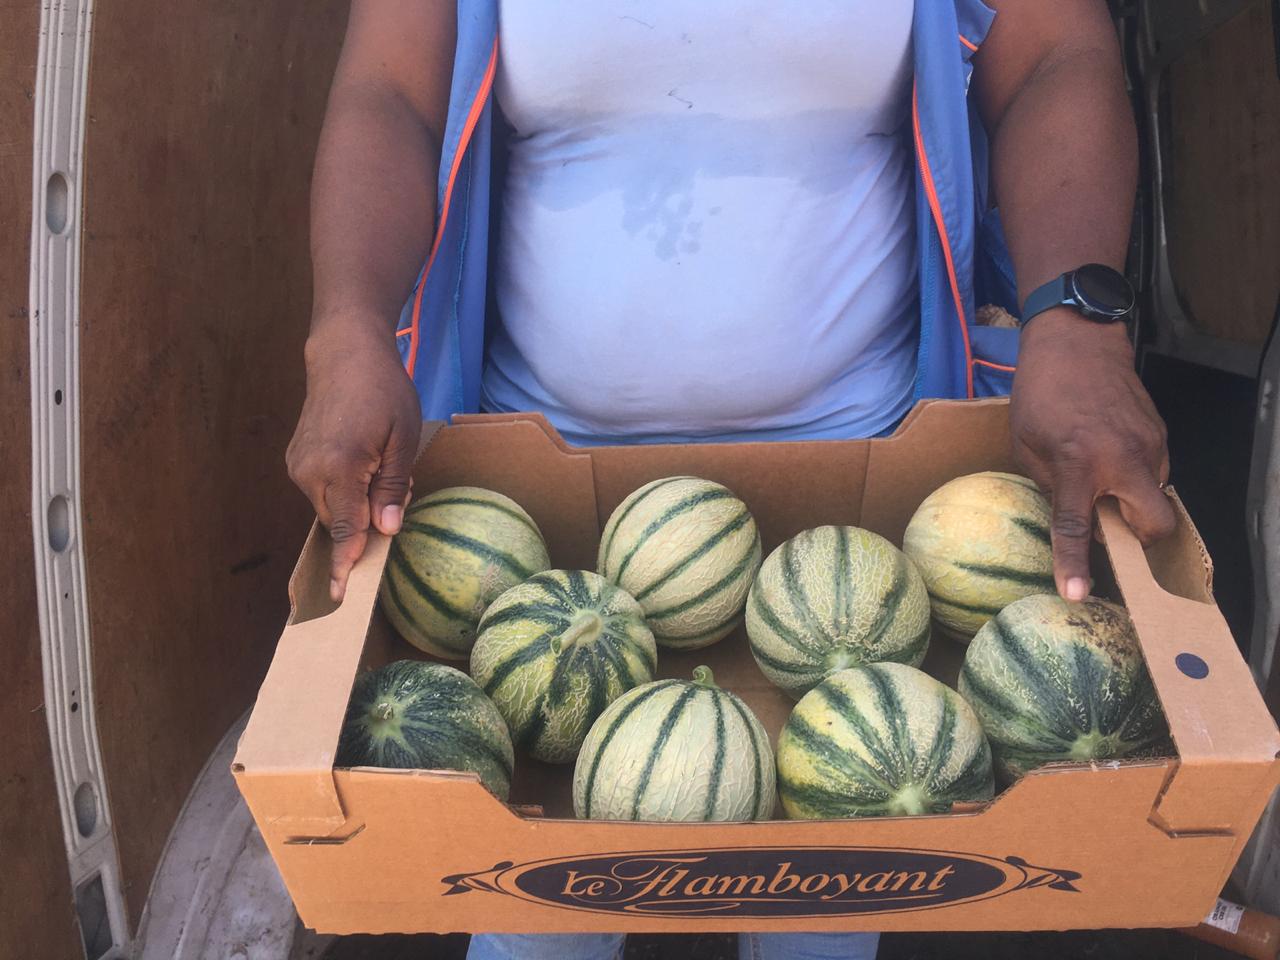     Des melons : les producteurs cassent les prix

